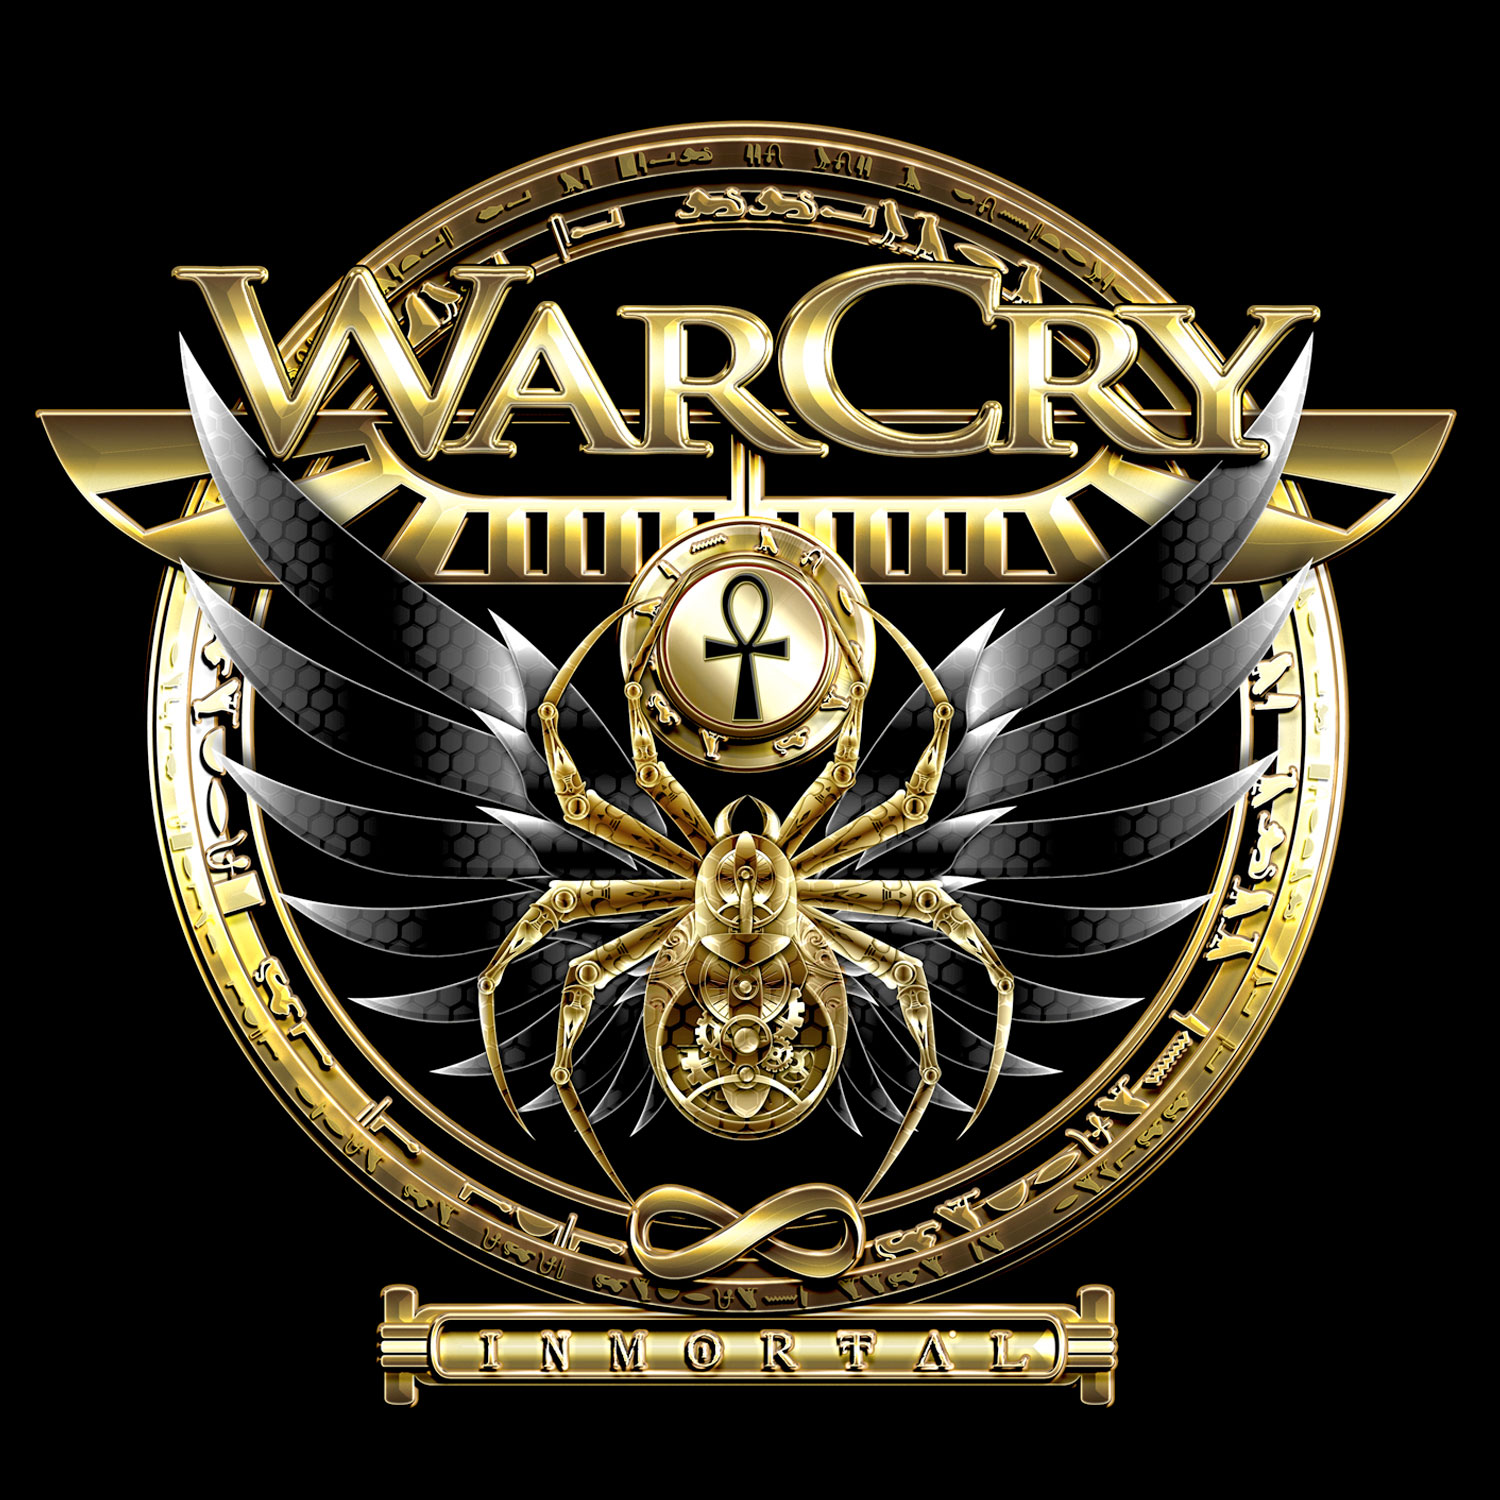 Warcry: Inmortal, la portada del disco